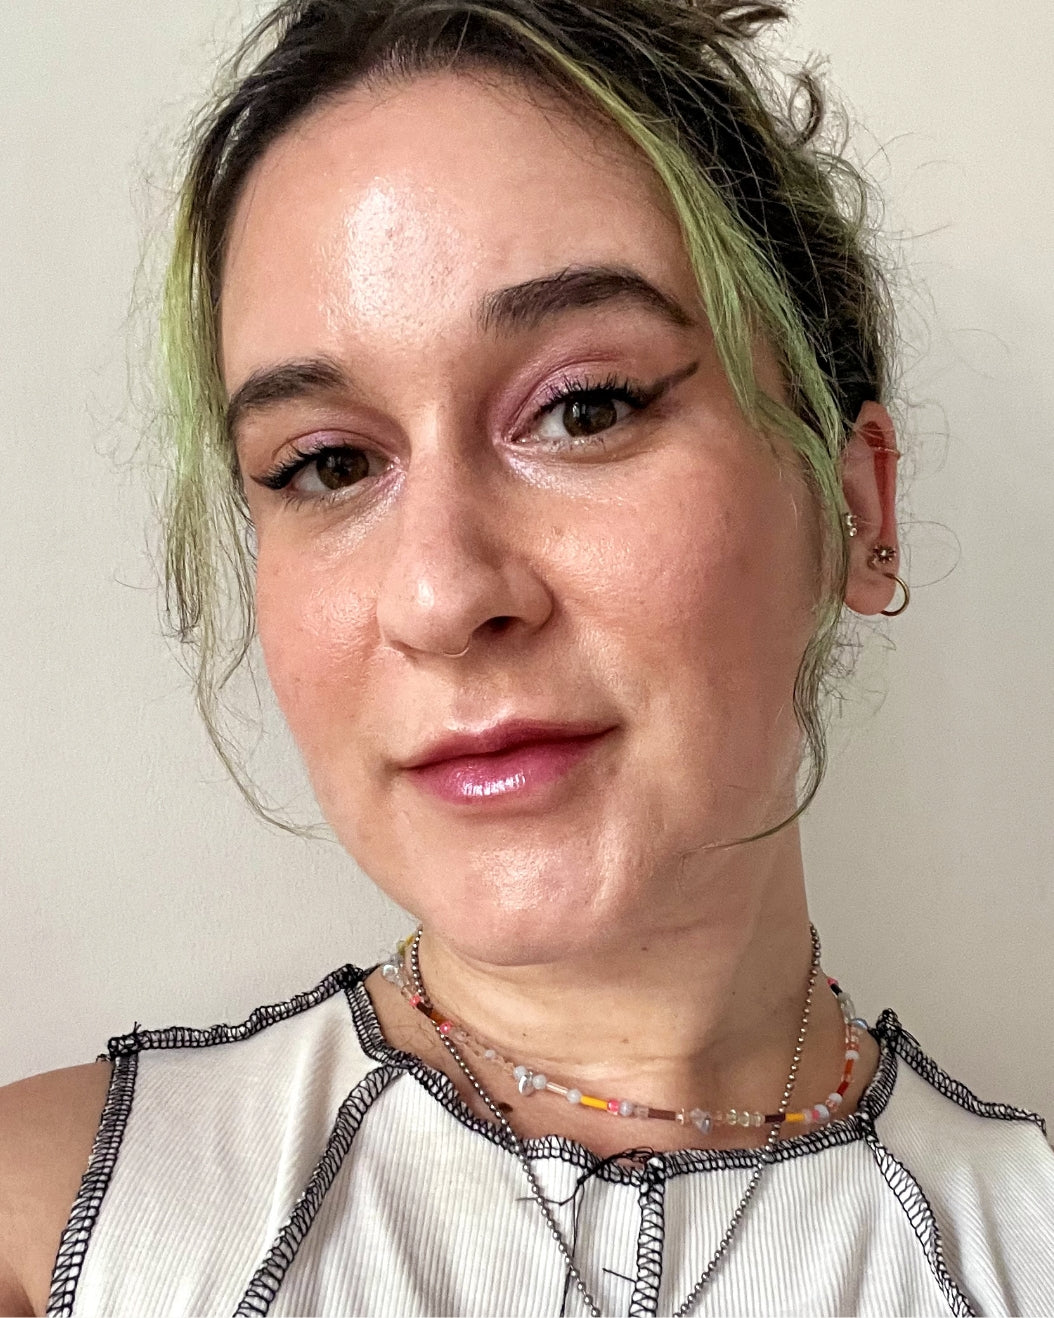 Devon wears Milk Makeup Bionic Blush for a glowy, summer look